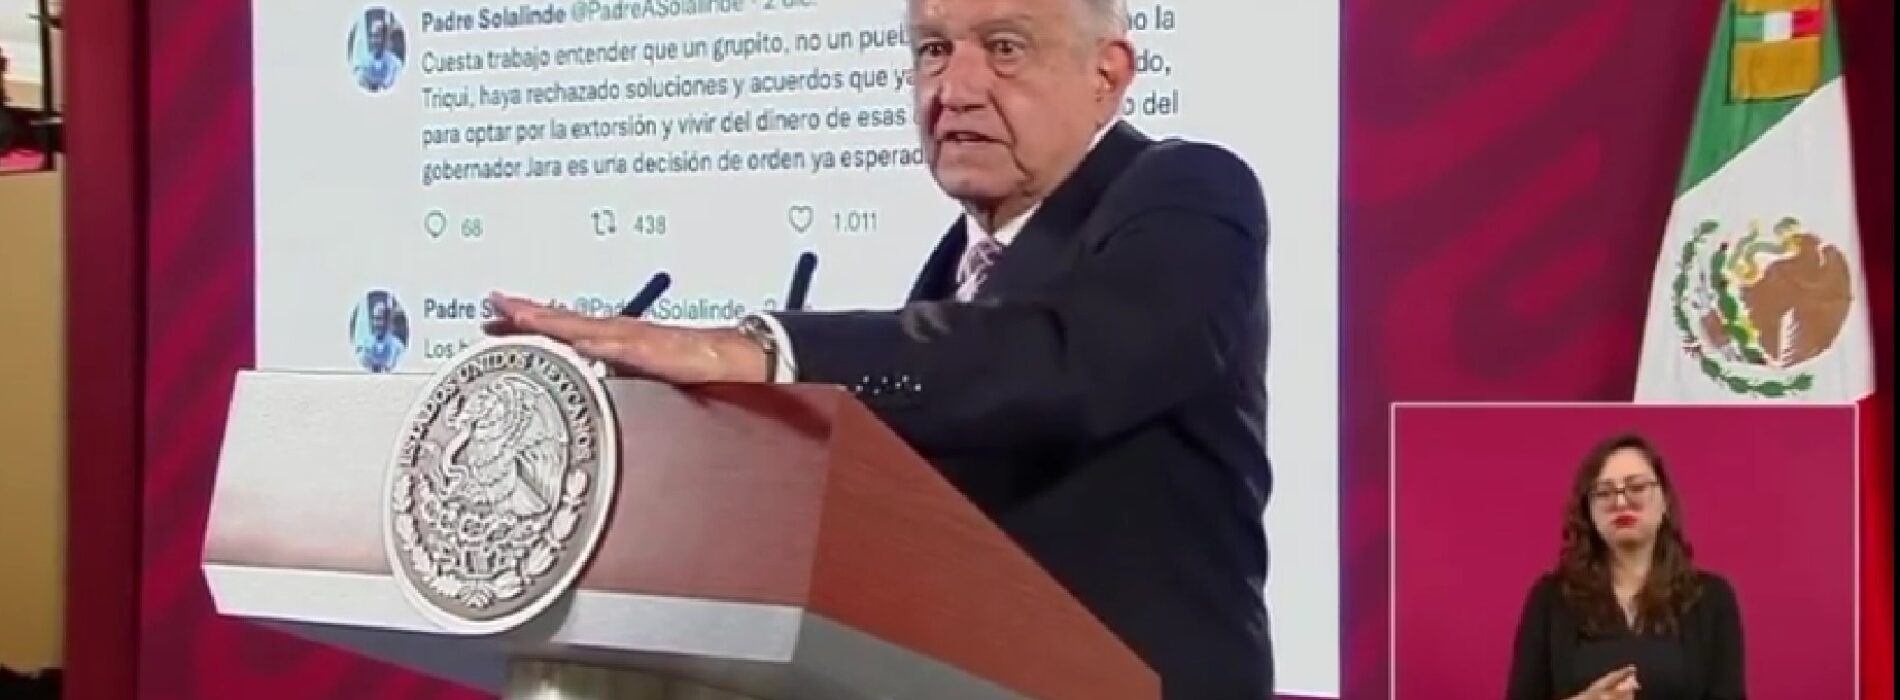 Reconoce el presidente Andrés Manuel López Obrador liberación del zócalo y portales del Palacio de Gobierno en Oaxaca